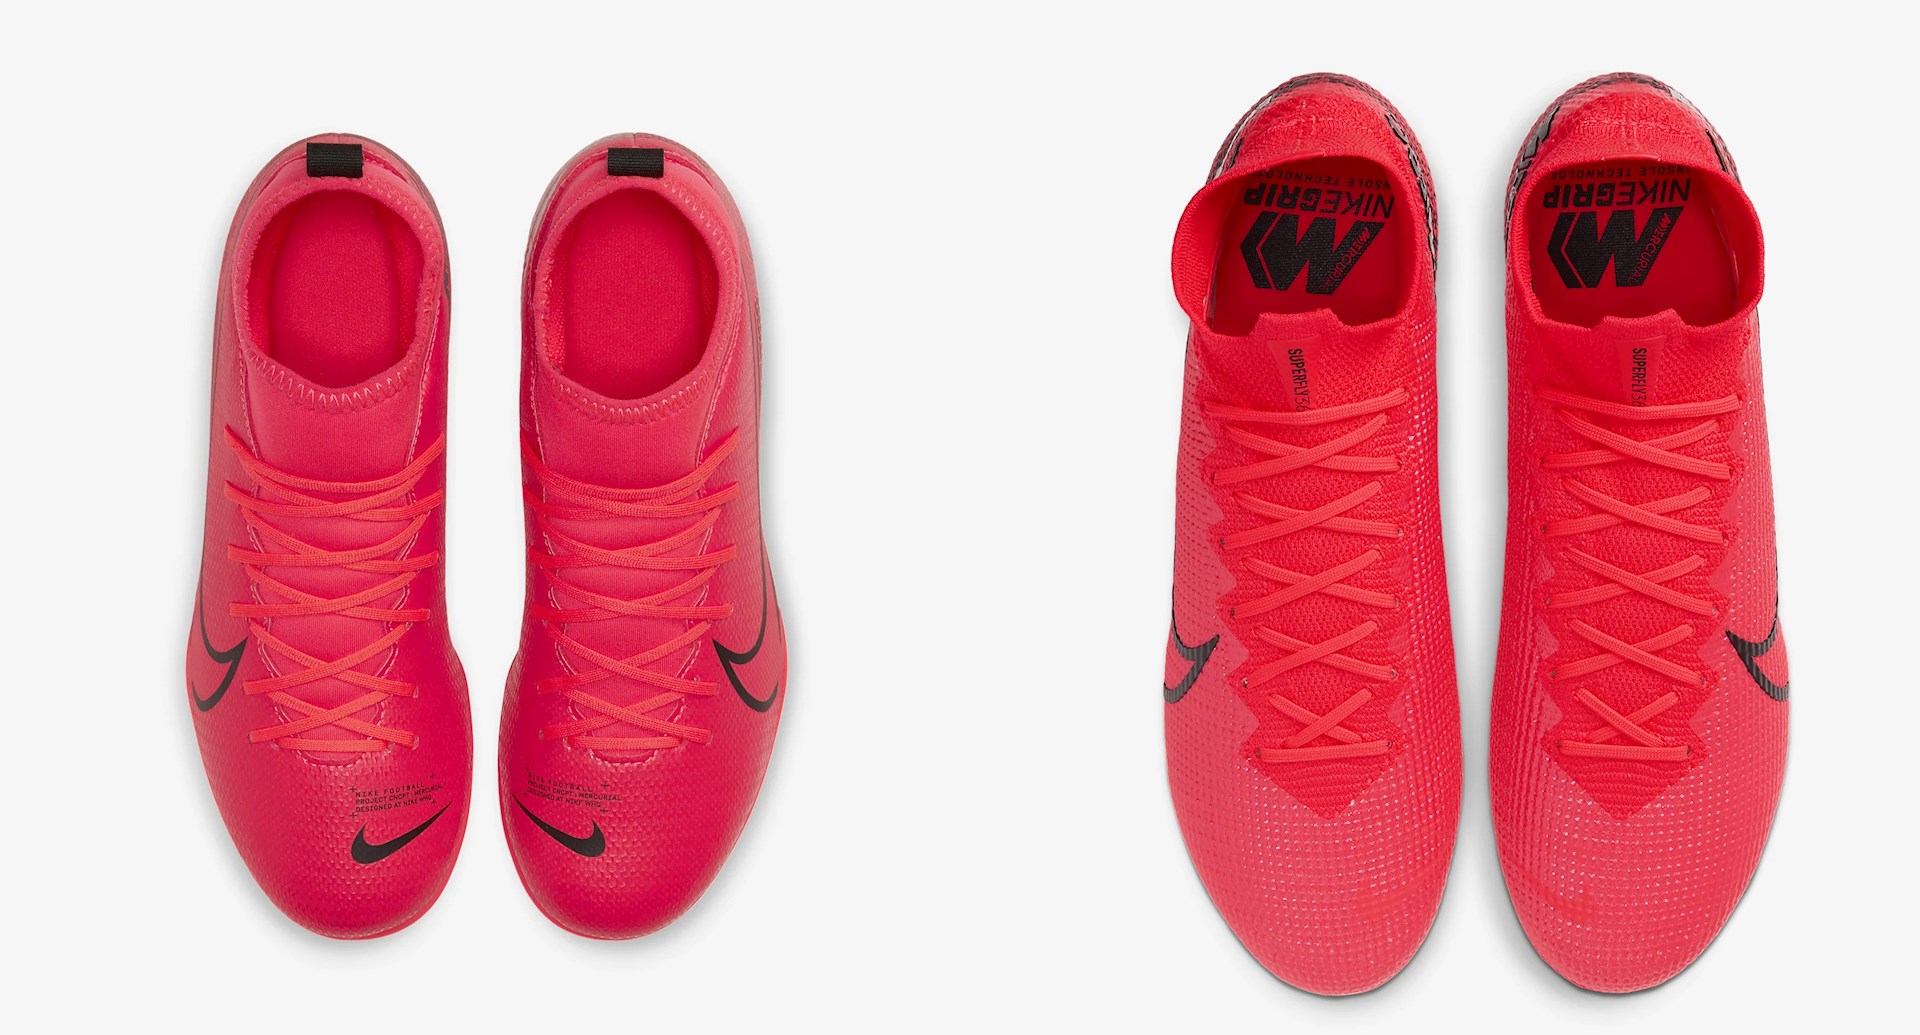 Wiskundig Algemeen Kenia Goedkope Nike Mercurial Superfly voetbalschoenen - Voetbal-schoenen.eu